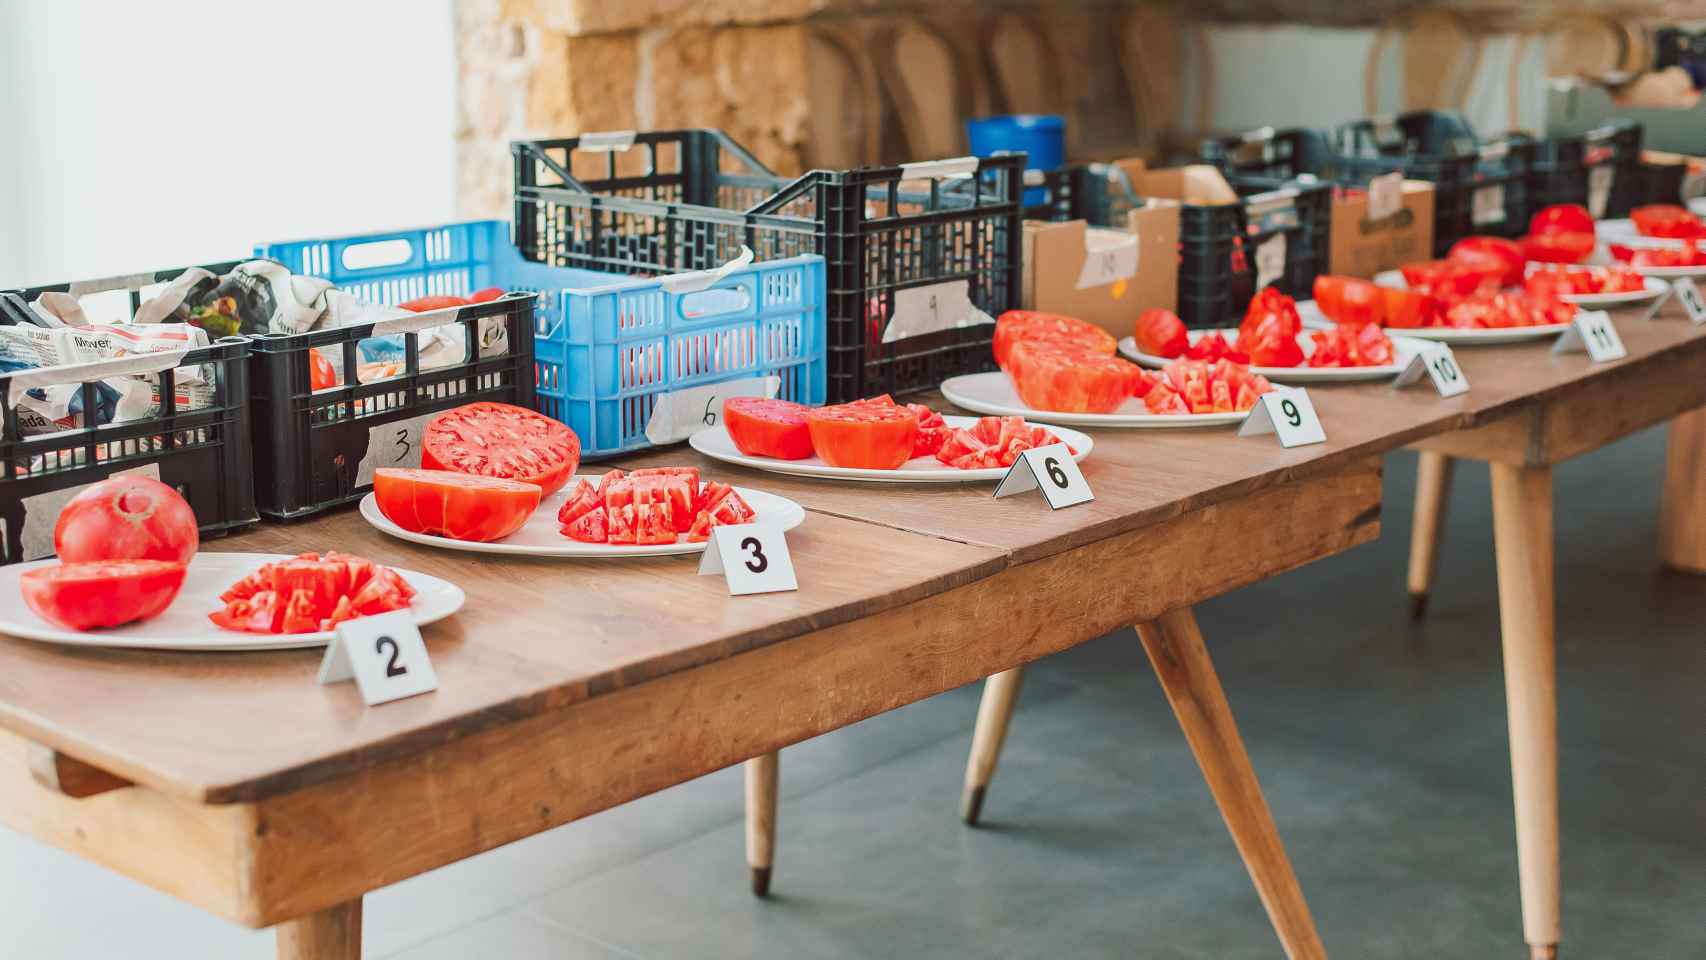 Aquí hay tomate: se busca el mejor de la Comunidad Valenciana